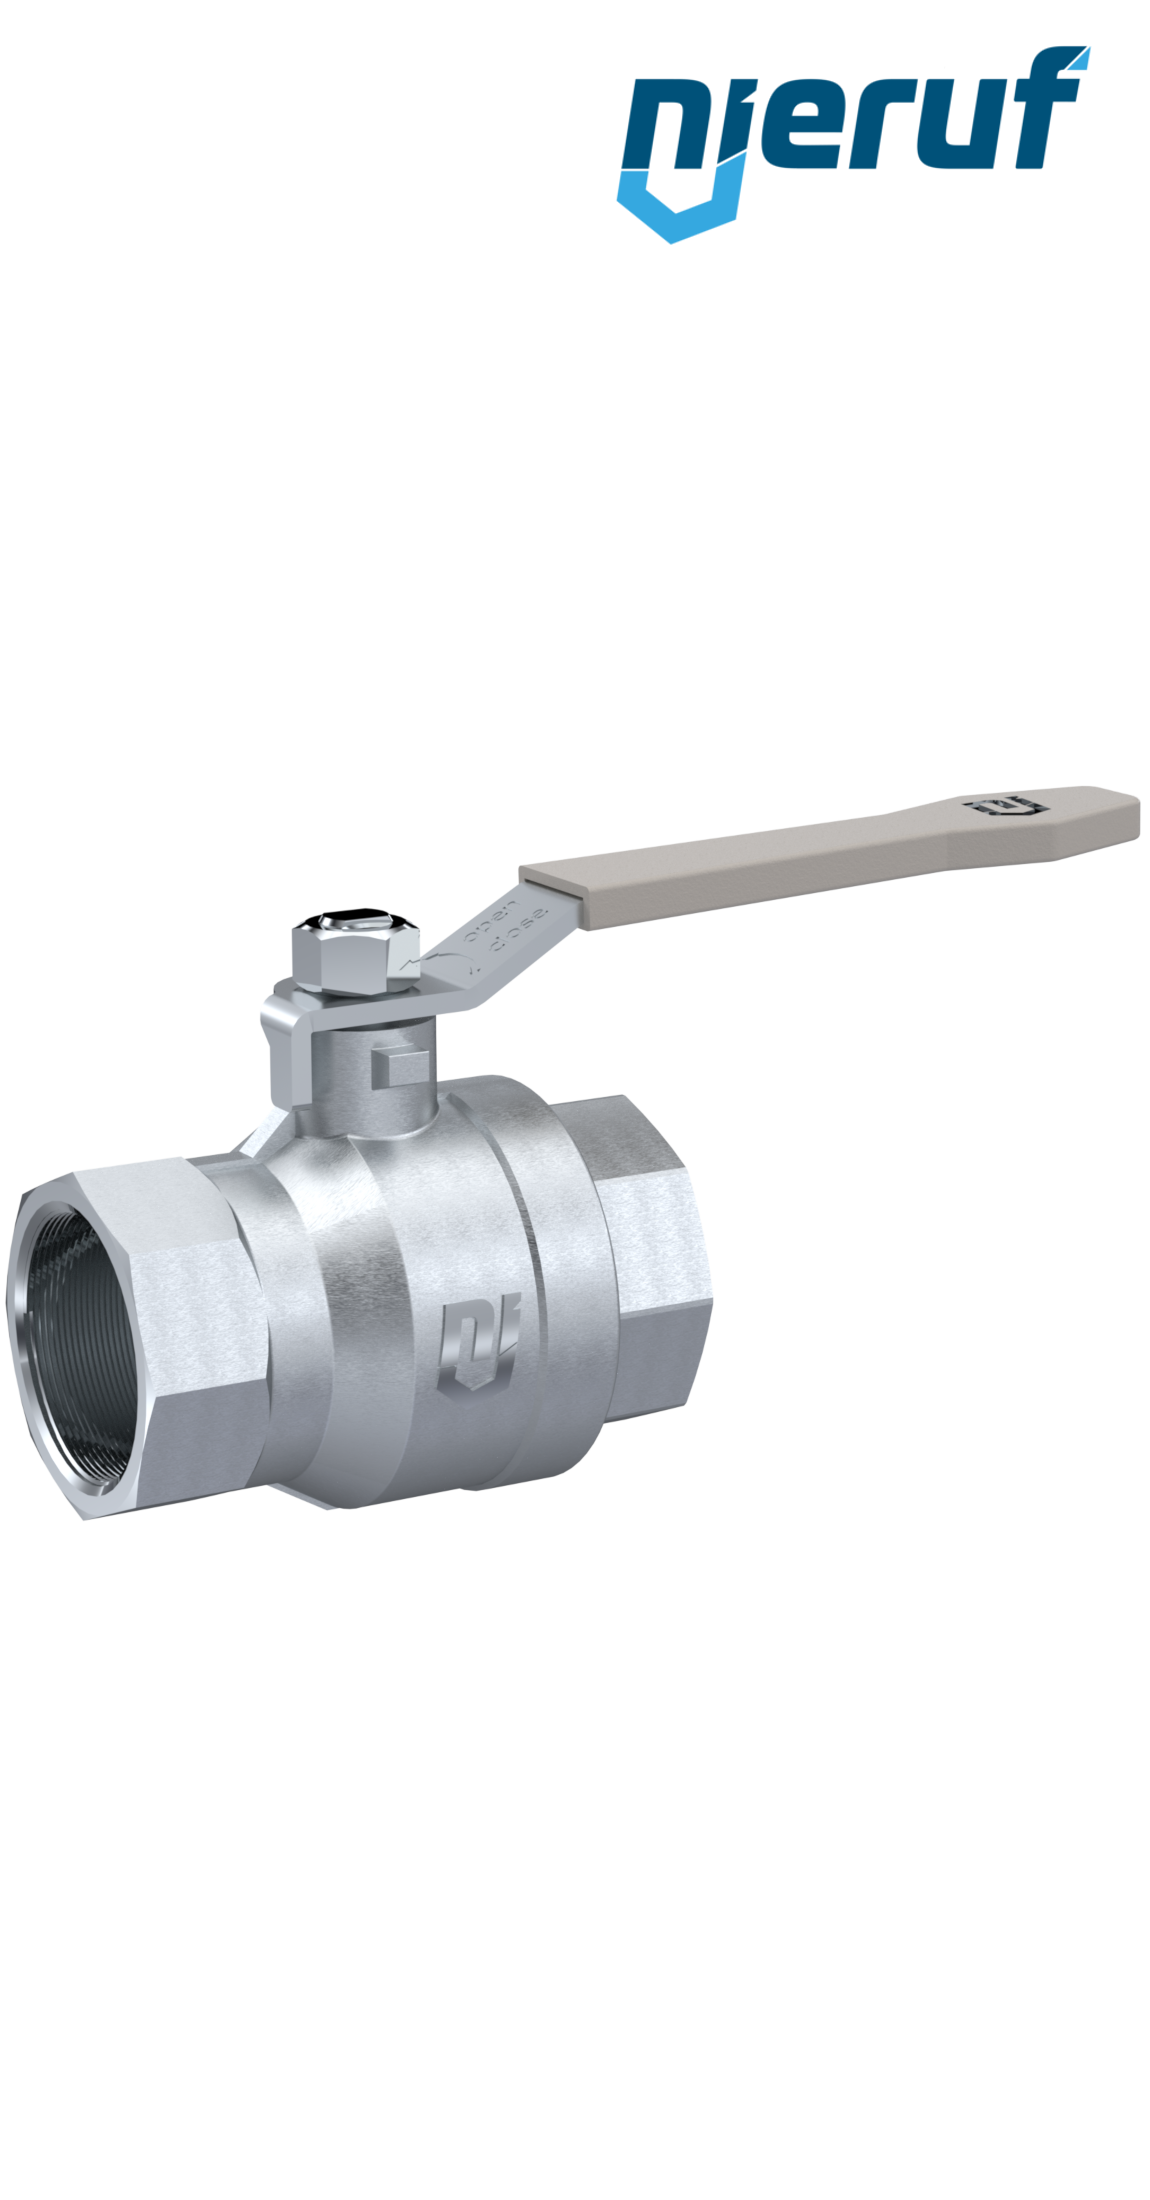 ball valve made of brass DN32 - 1 1/4" inch GK02 gas & water DVGW